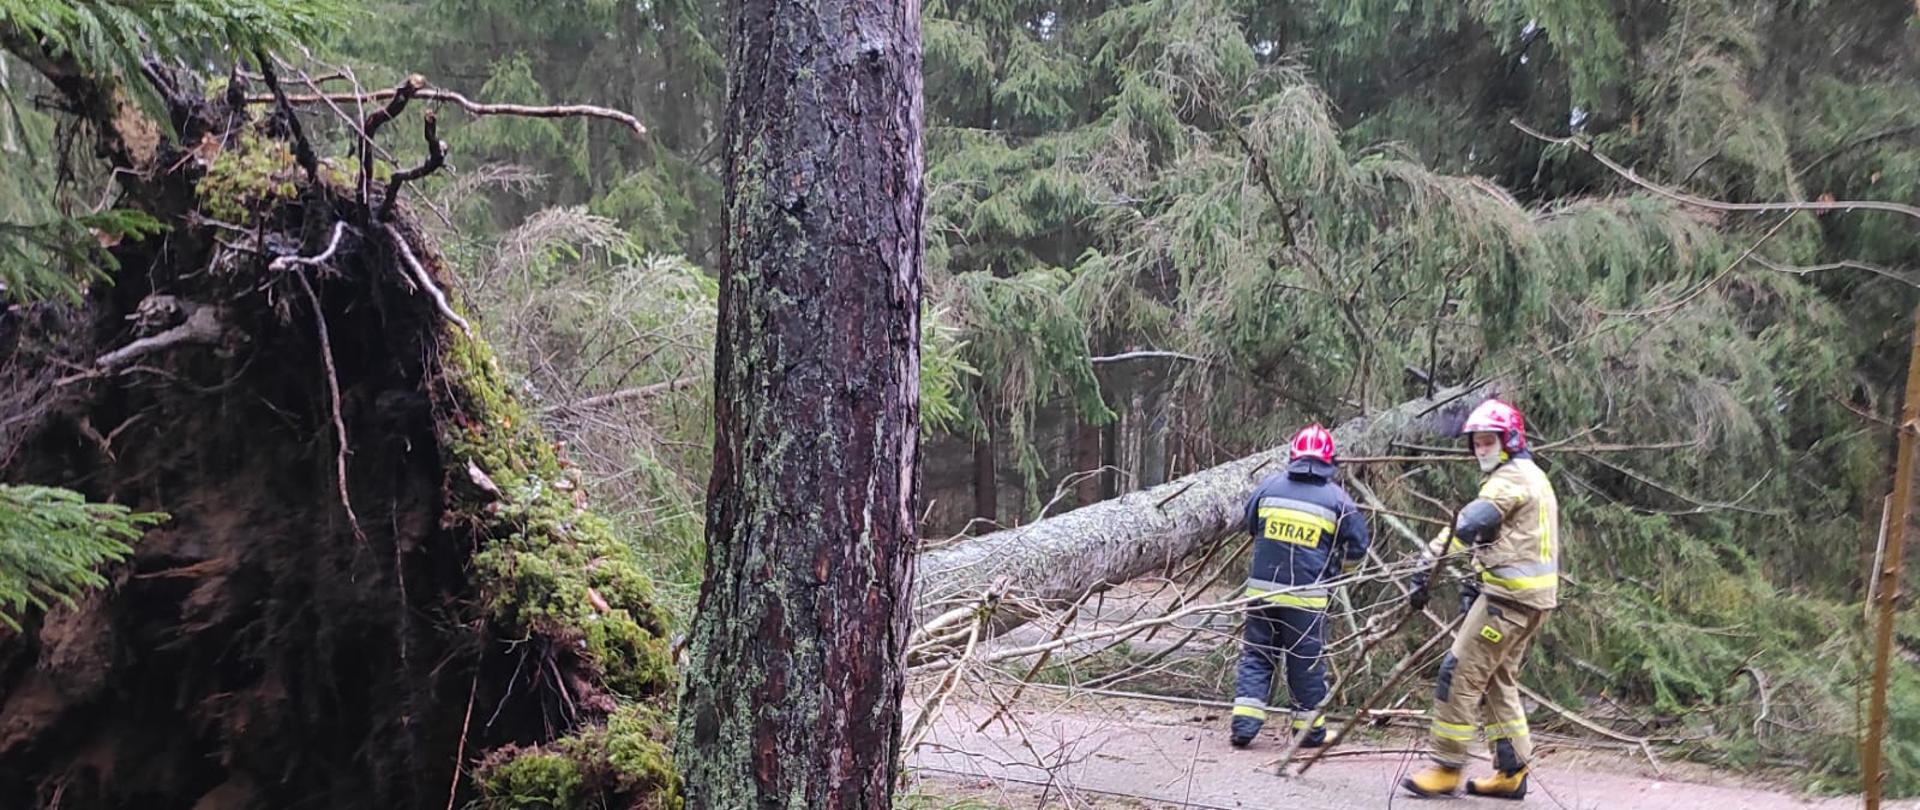 Zdjęcie przedstawia dwóch strażaków prowadzących działania w celu usunięcia powalonego przez silny wiatr drzewa, które utrudnia poruszanie się drogą